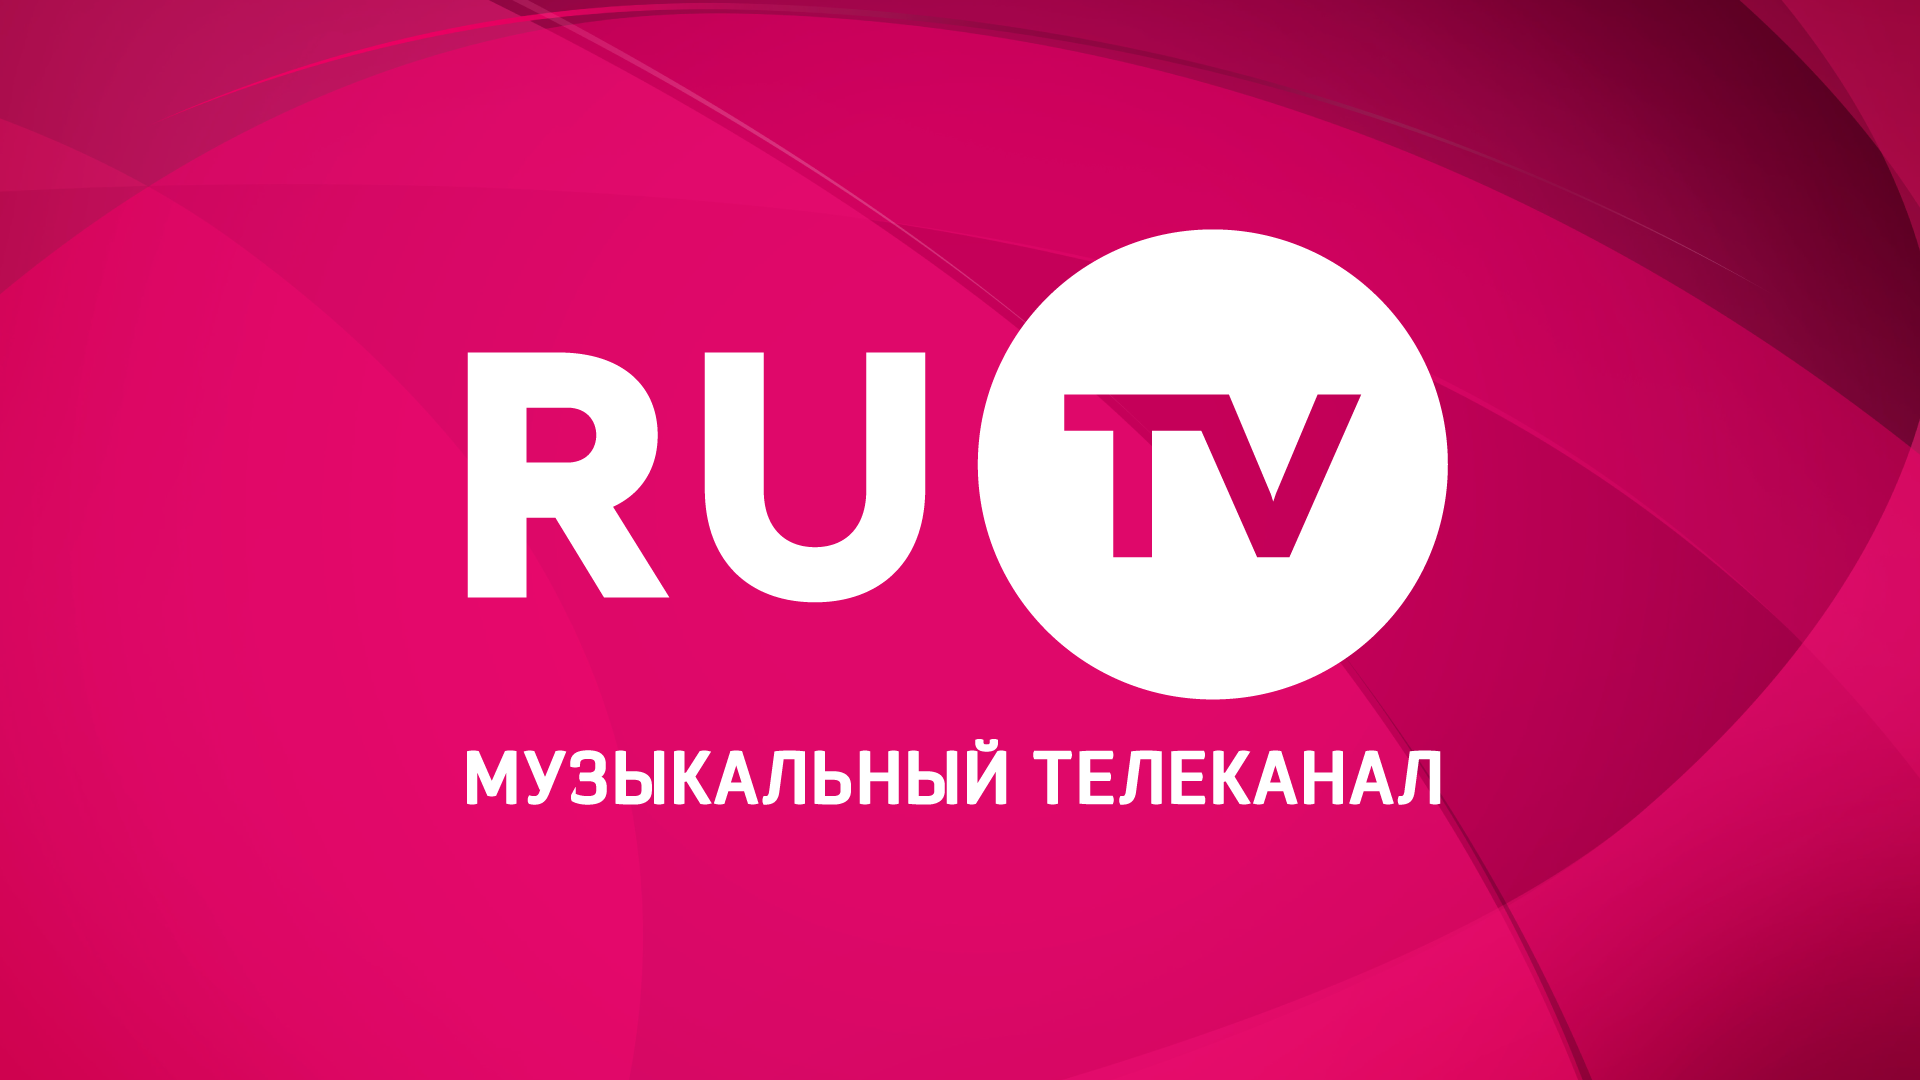 Ru.TV